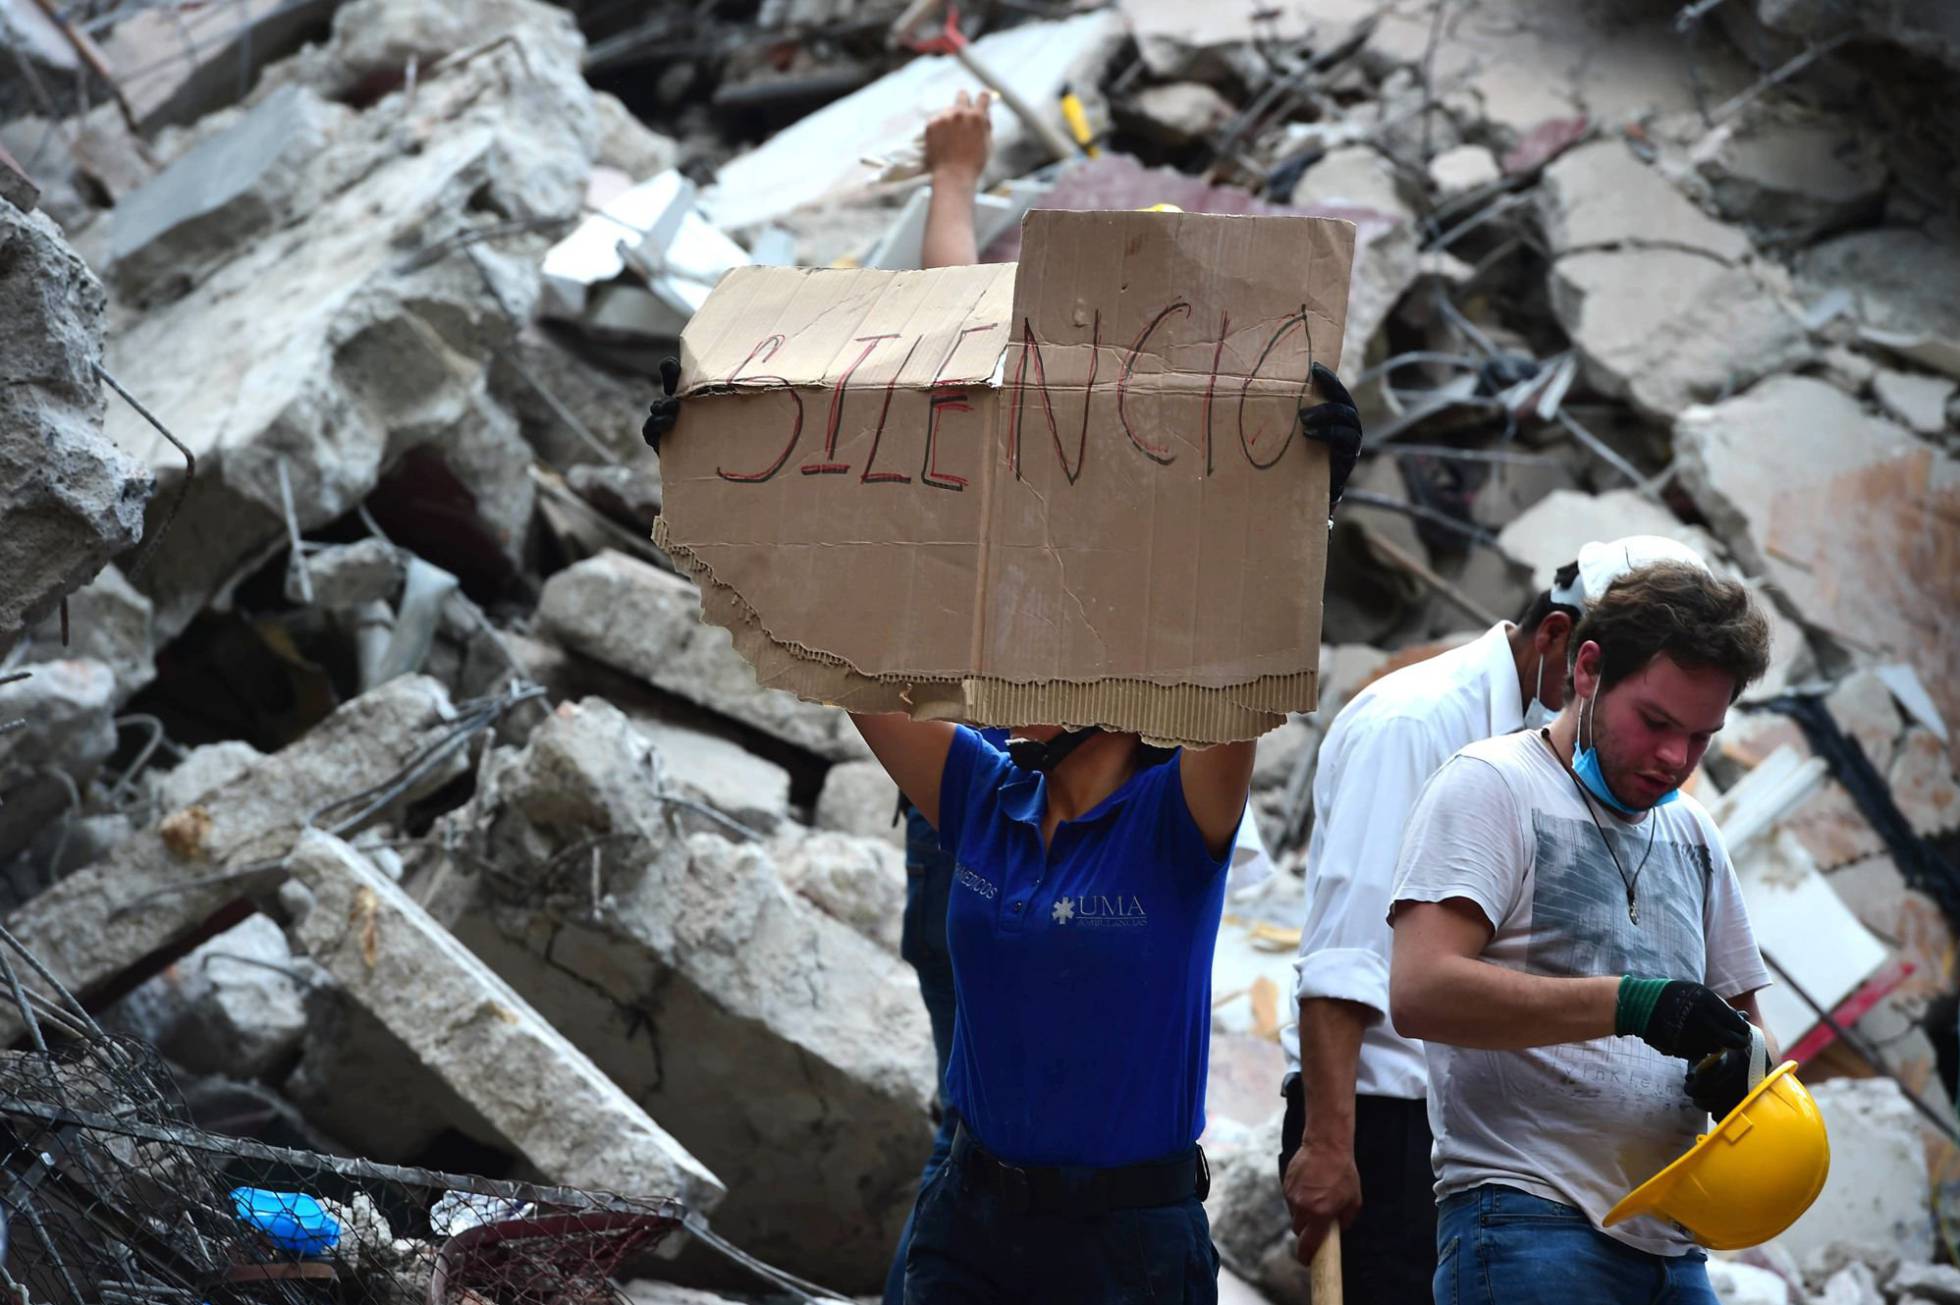 TERREMOTO NO MÉXICO Mais de 220 mortos após forte terremoto no México.FotoRONALDO SCHEMIDT AFP